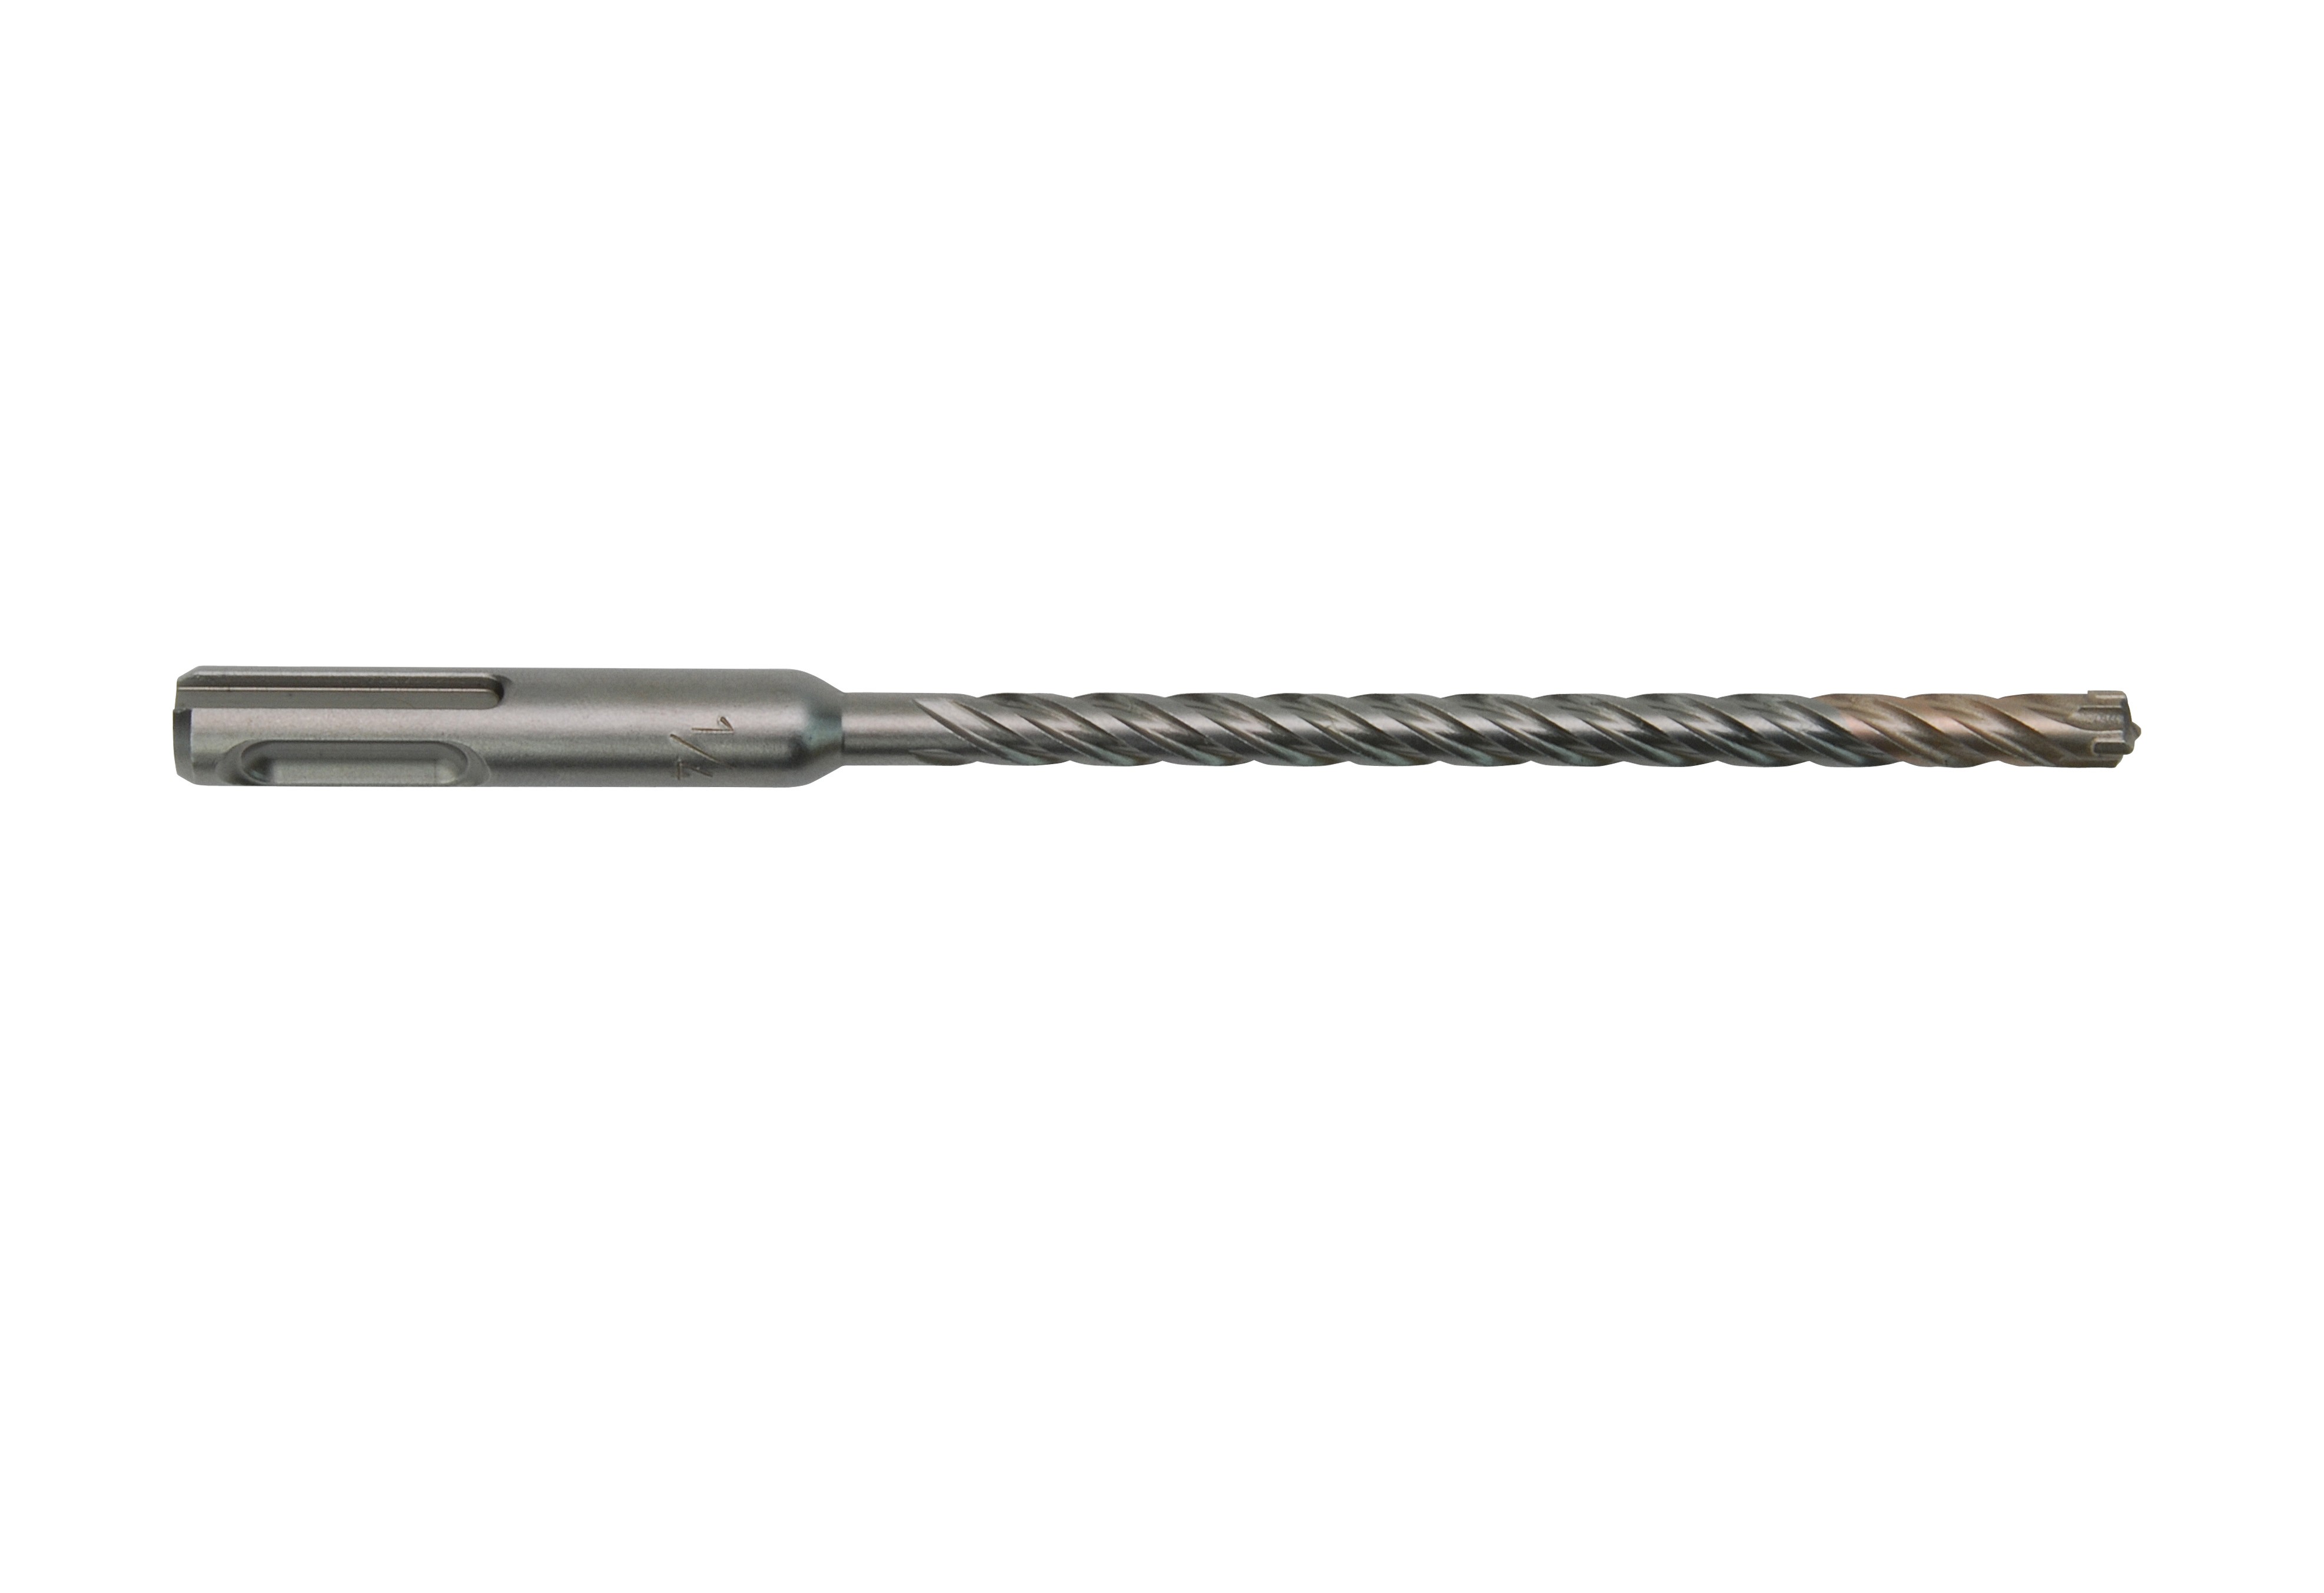 MX4 4-Cutter SDS-Plus Rotary Hammer-Drill Bit 3/16 in. x 4 in. x 6 in. - 15 Pack